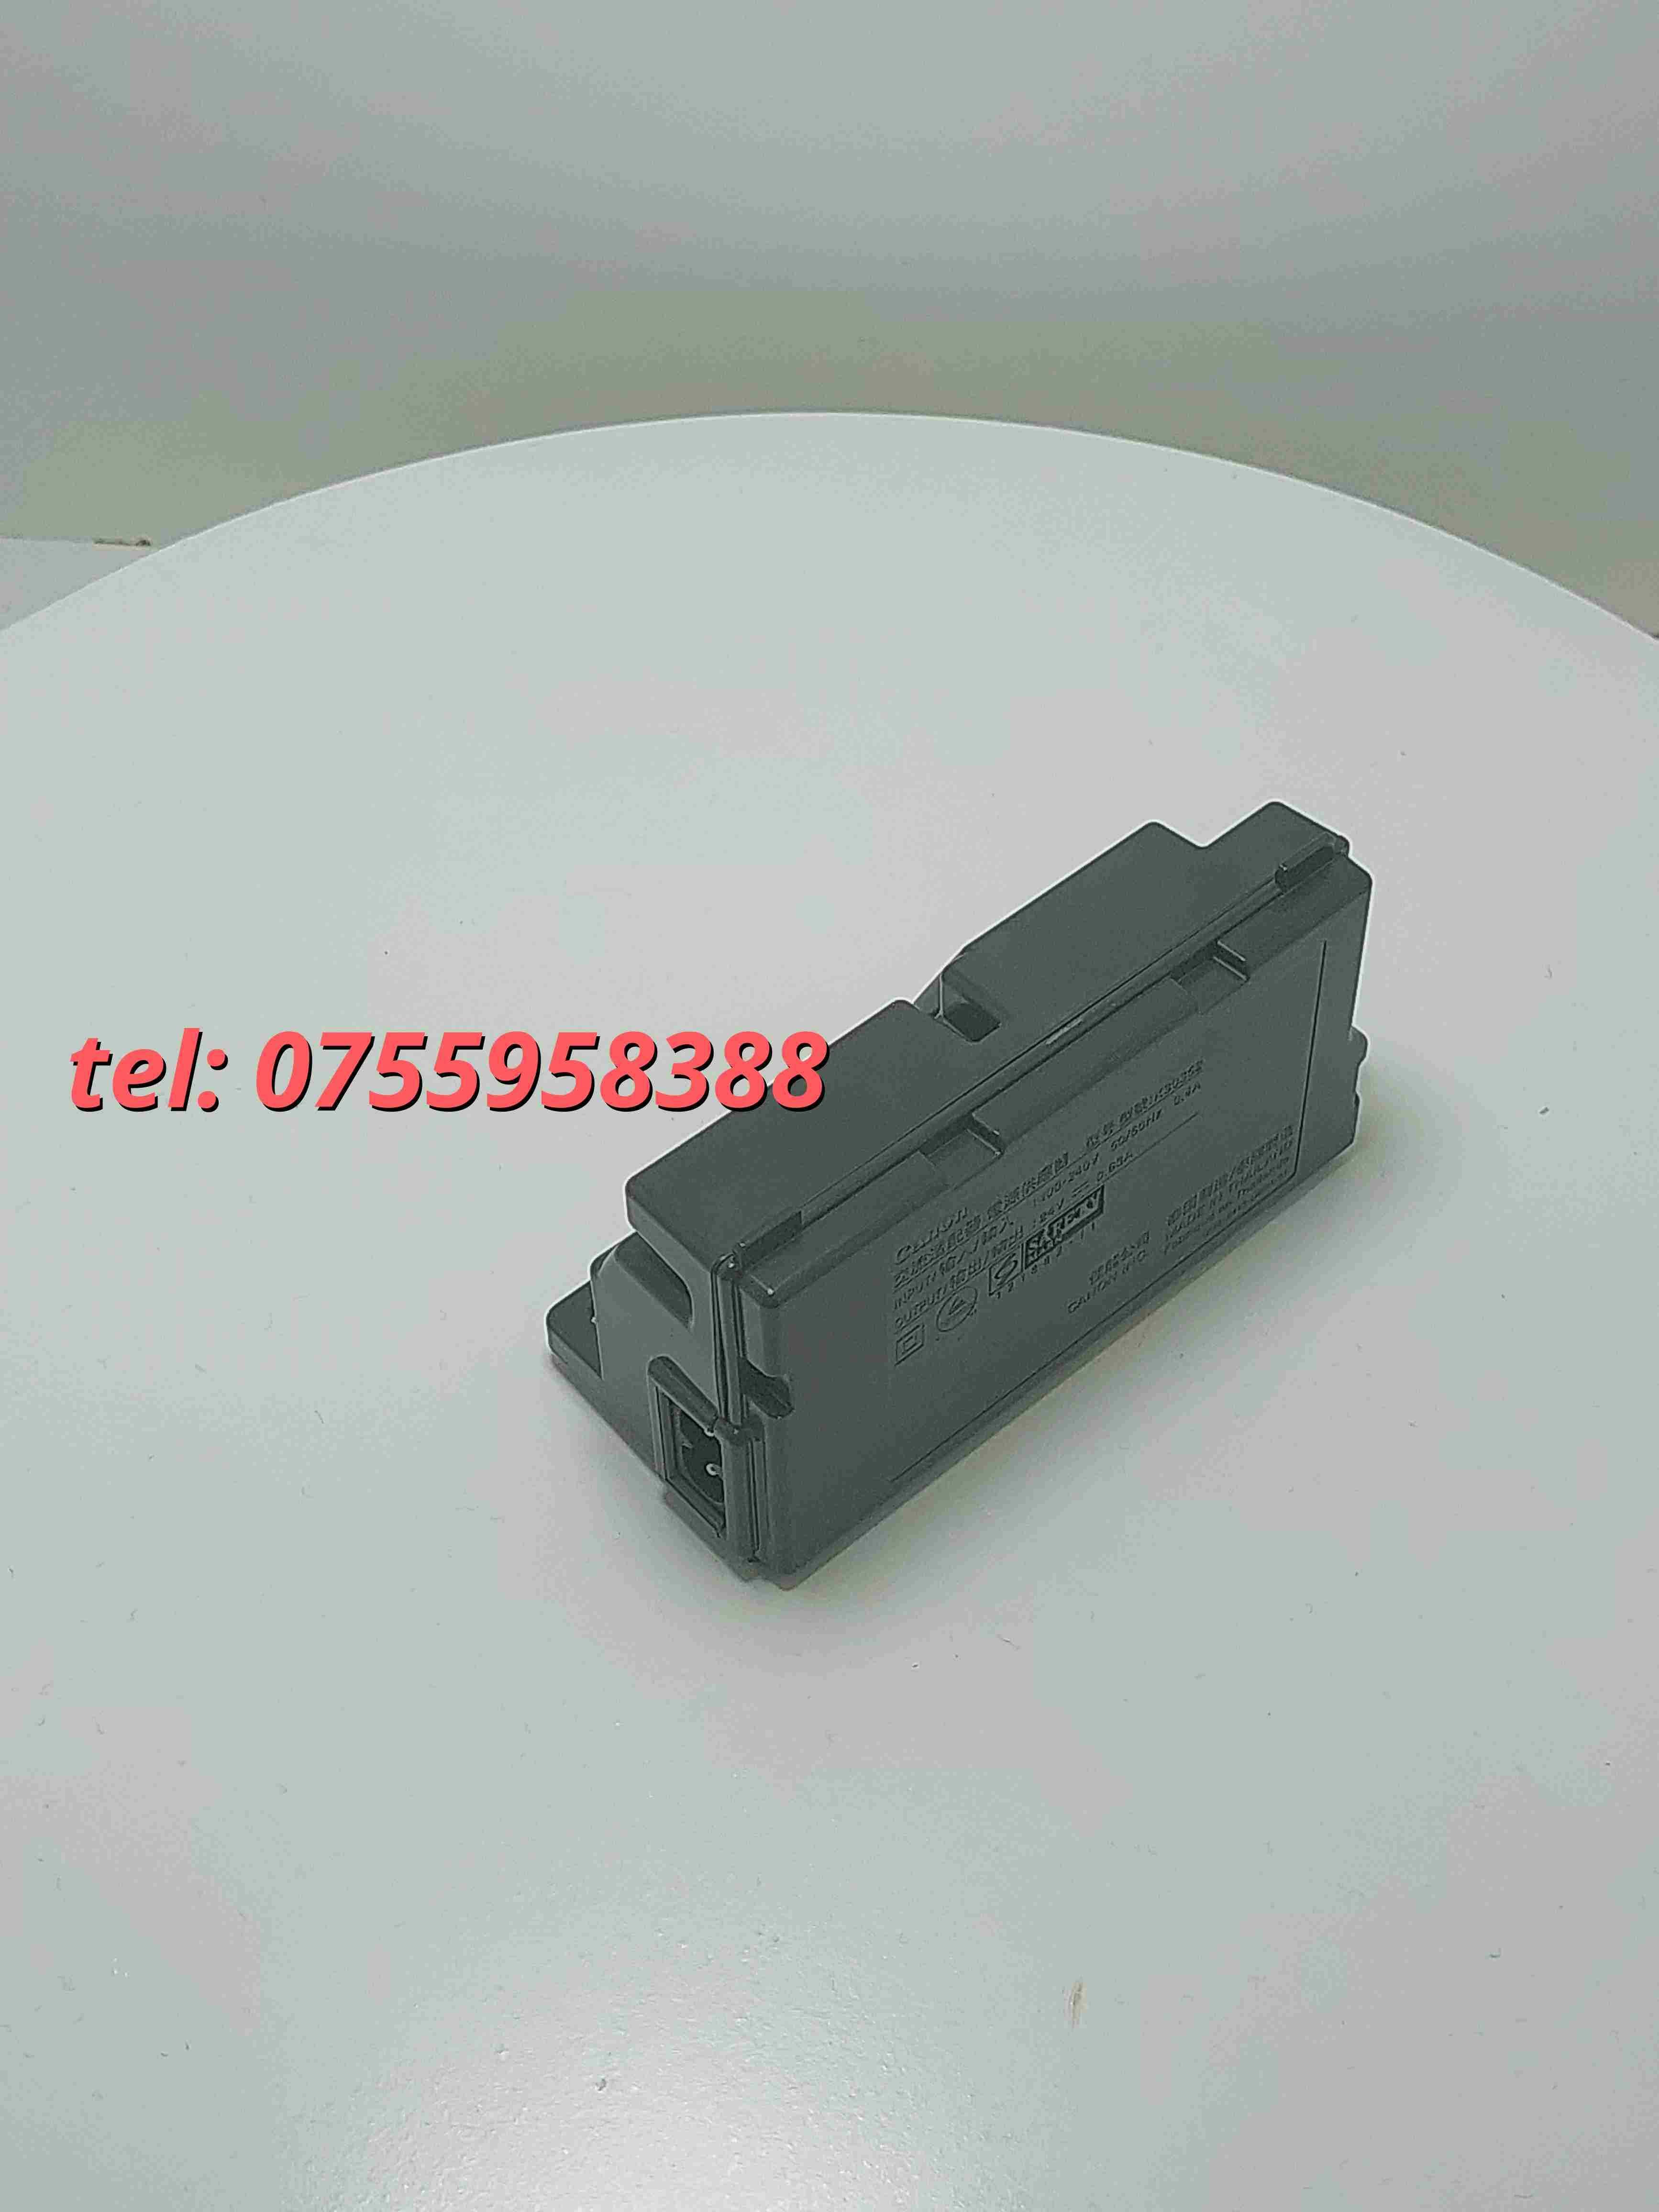 Sursa Multifunctionala Printer Canon K30352 Mg2922  Mg2920  Mg2520